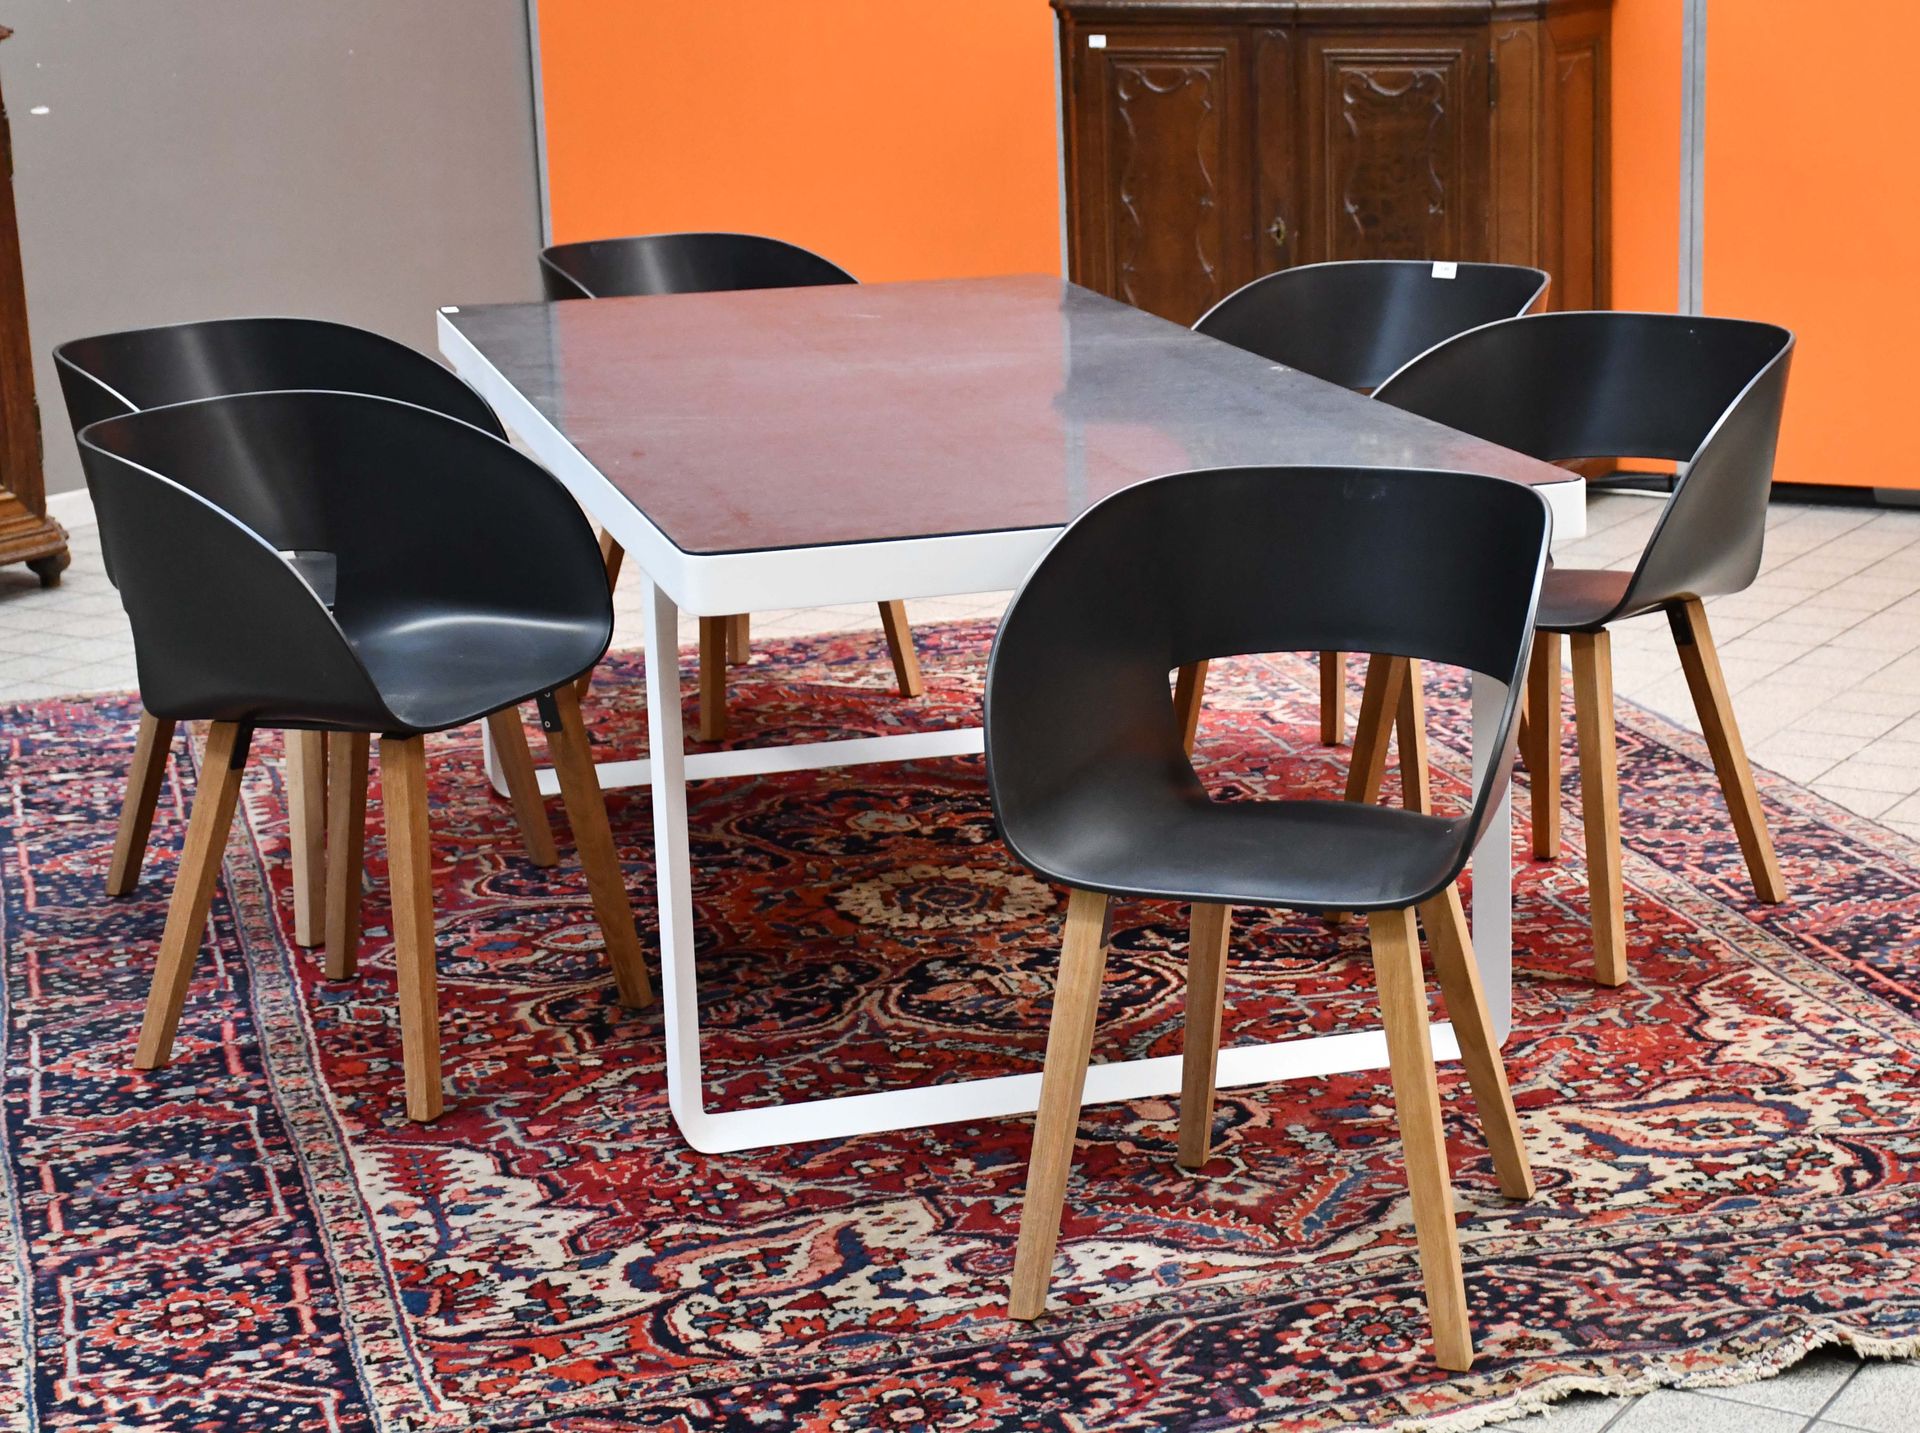 Null 翠布

Neutra "桌子，白色粉末涂层铝和比利时蓝石顶，以及六把扶手椅，黑色外壳和柚木腿。

尺寸：220厘米×100厘米。